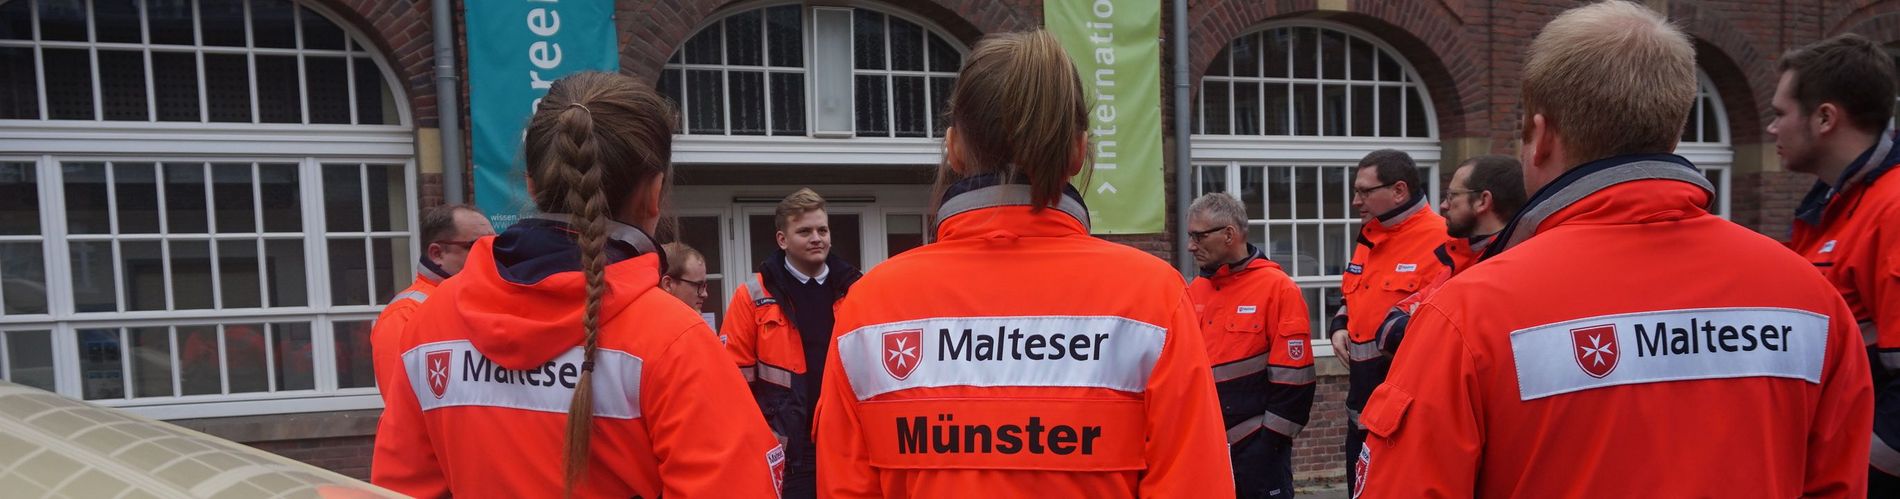 Helferinnen und Helfer stehen zusammen und unterhalten sich. Im Vordergrund ist eine Einsatzjacke mit der Aufschrift Malteser Münster.